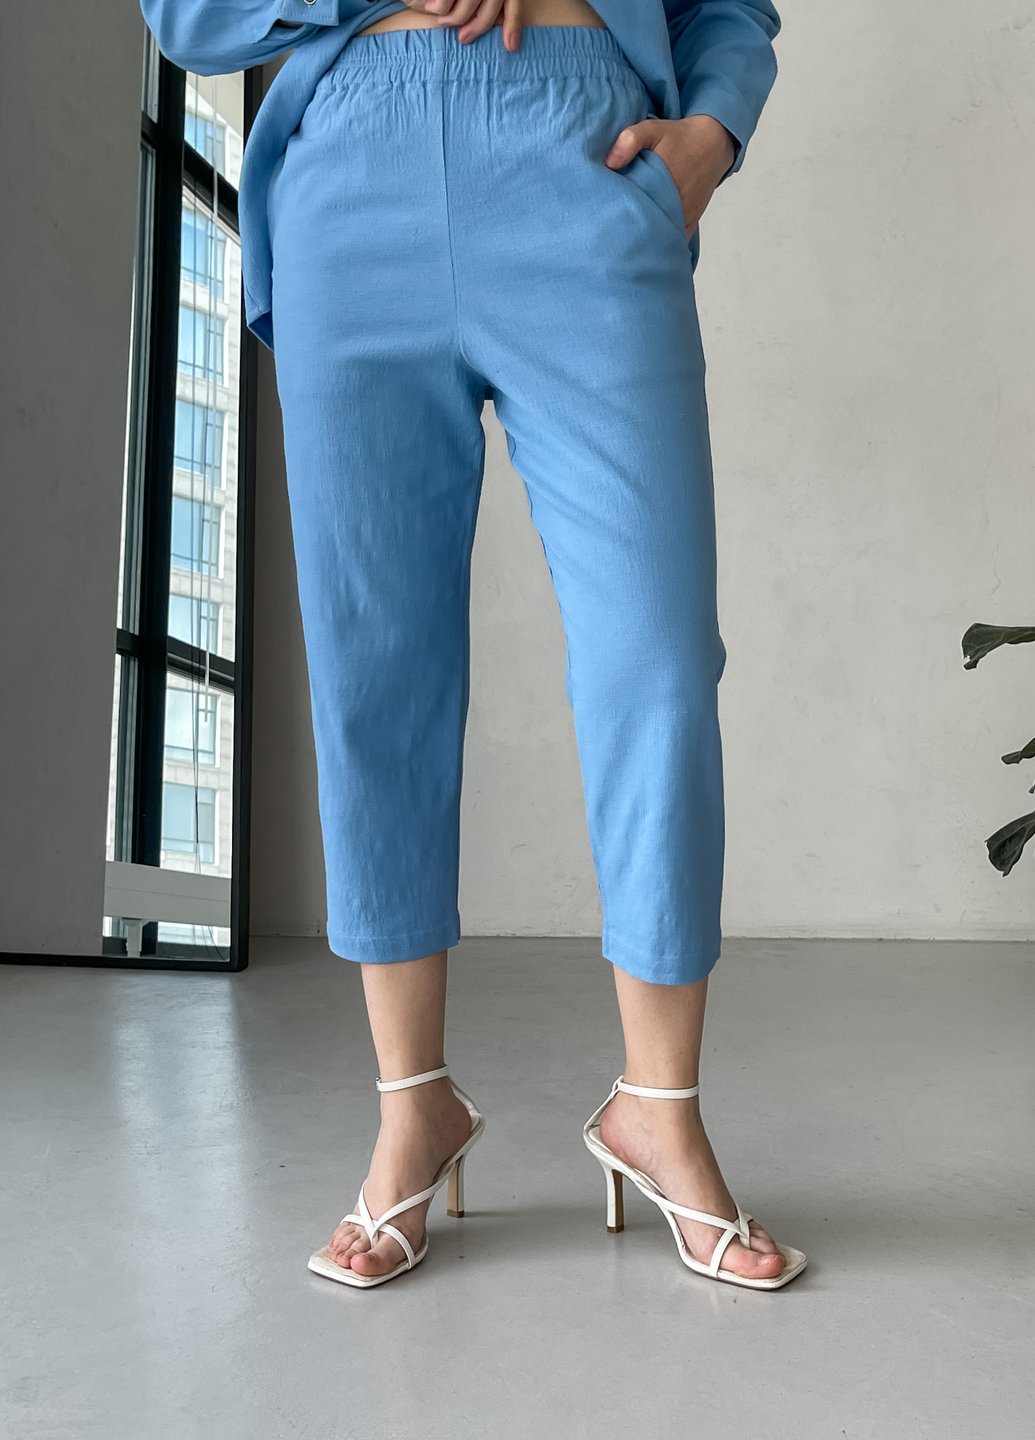 Льняные брюки женские чиносы Merlini Прованс 600000161, размер 42-44